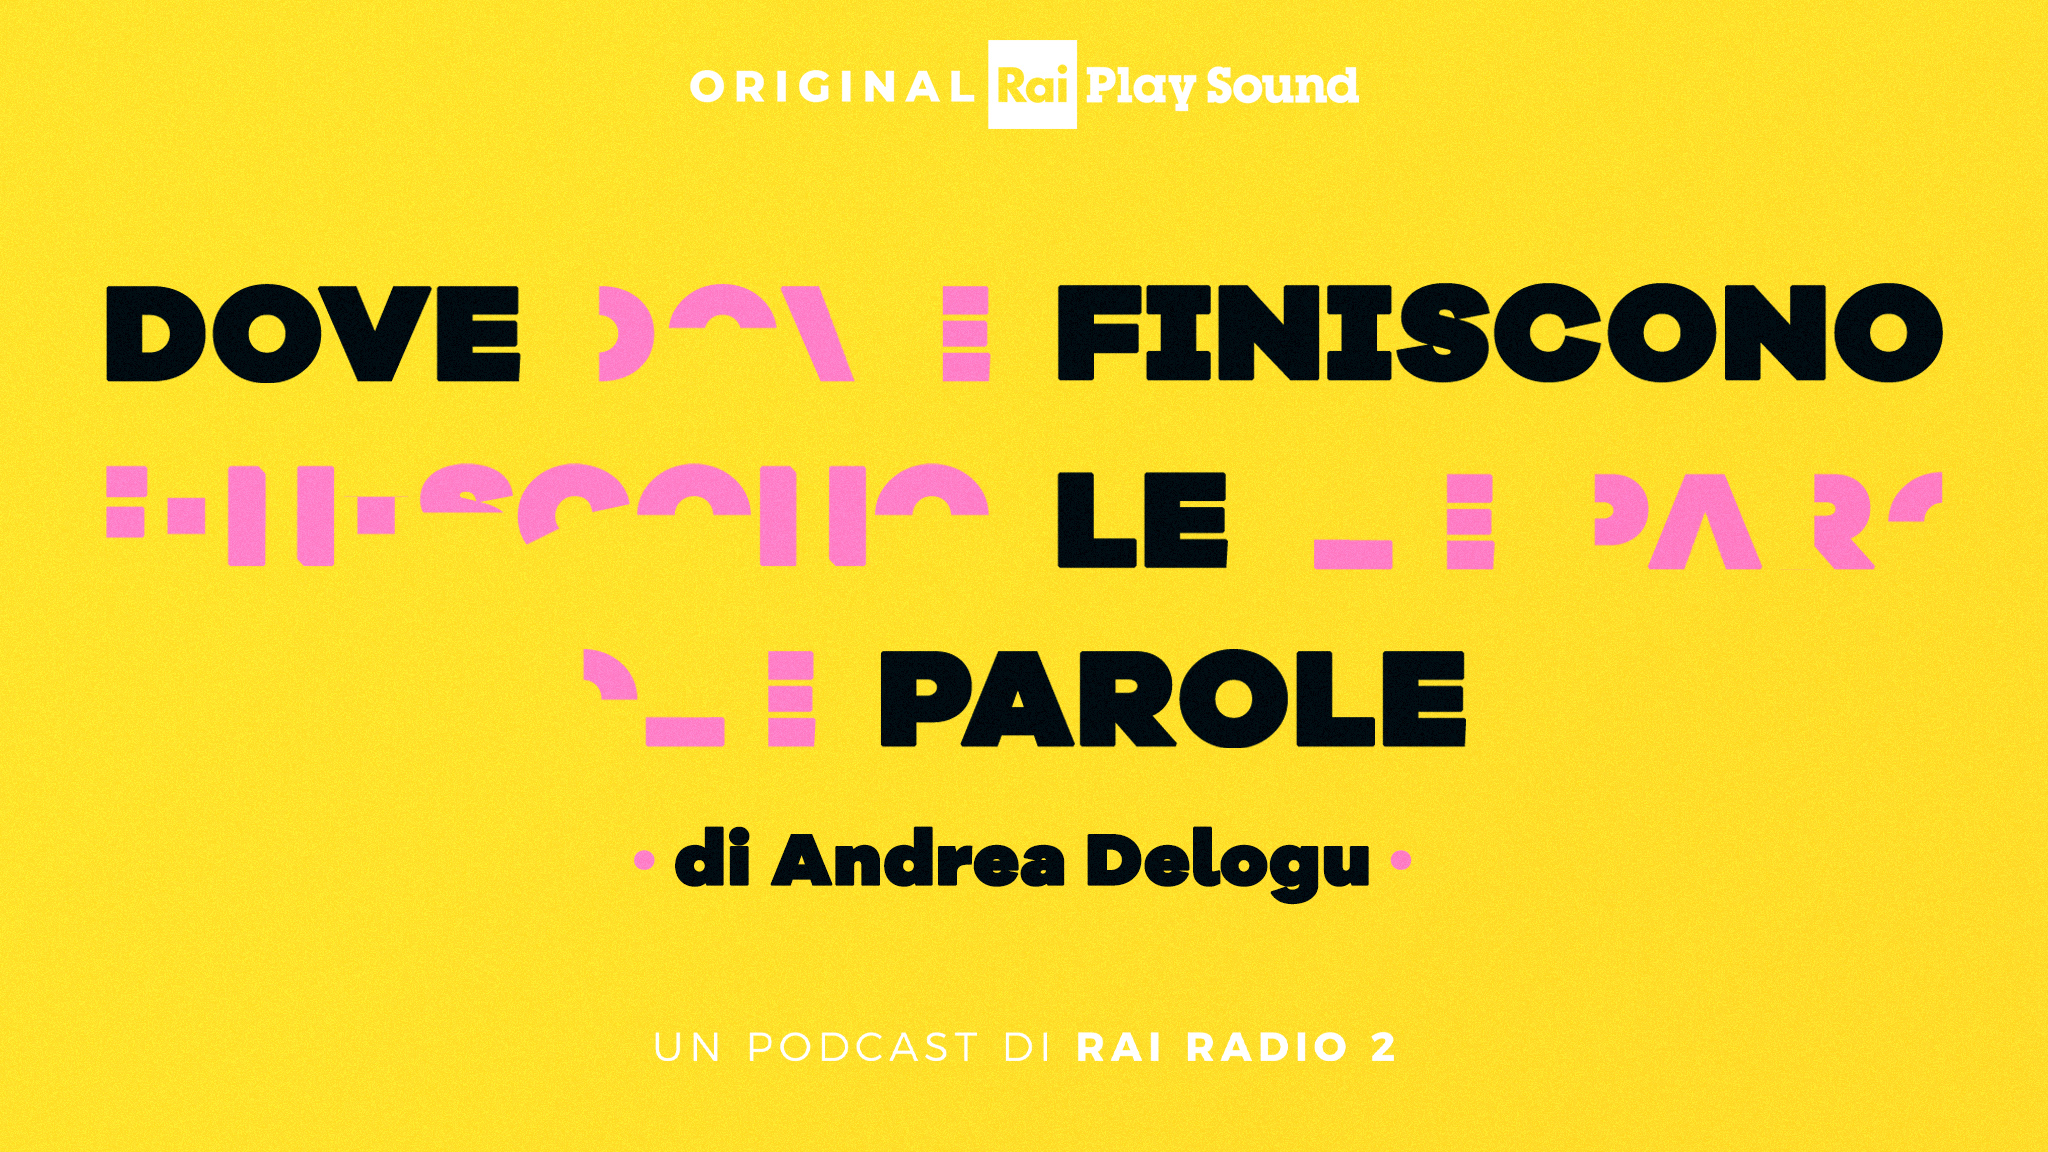 Prodotto da Rai Radio 2 in media partnership con AID – Associazione Italiana Dislessia, il Podcast di Andrea Delogu “Dove finiscono le parole” è disponibile da oggi su RaiPlay Sound in 10 episodi.